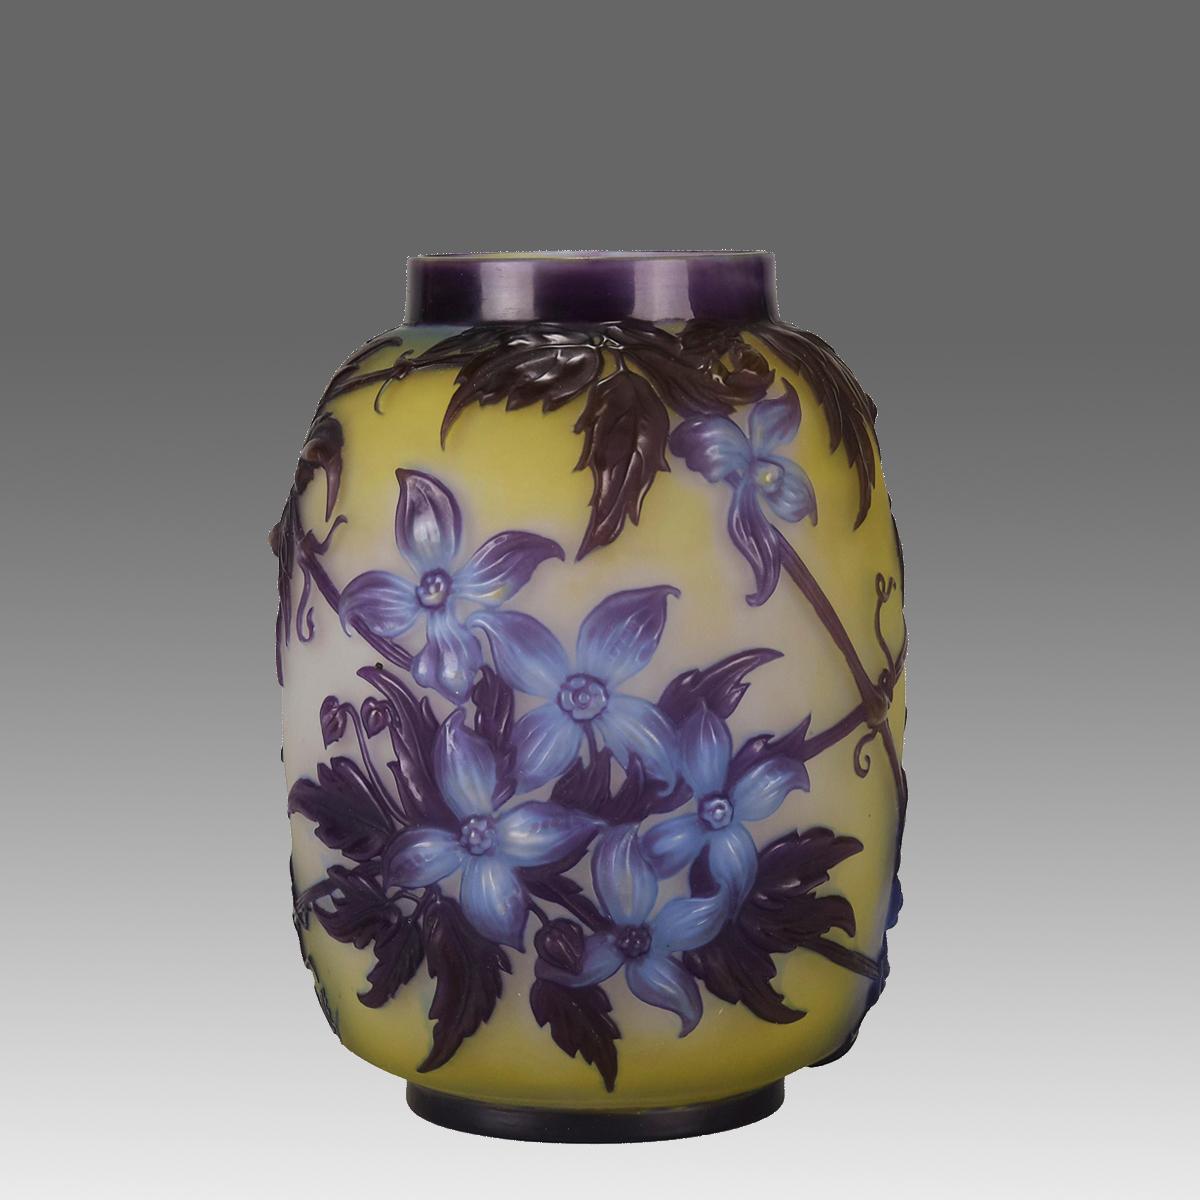 Étonnant et rare vase en verre soufflé camée français du début du 20e siècle, avec un décor soufflé au moule de clématites en fleurs dans des couleurs bleues et violettes sur un champ jaune vibrant, signé Gallé.

INFORMATIONS COMPLÉMENTAIRES
Hauteur